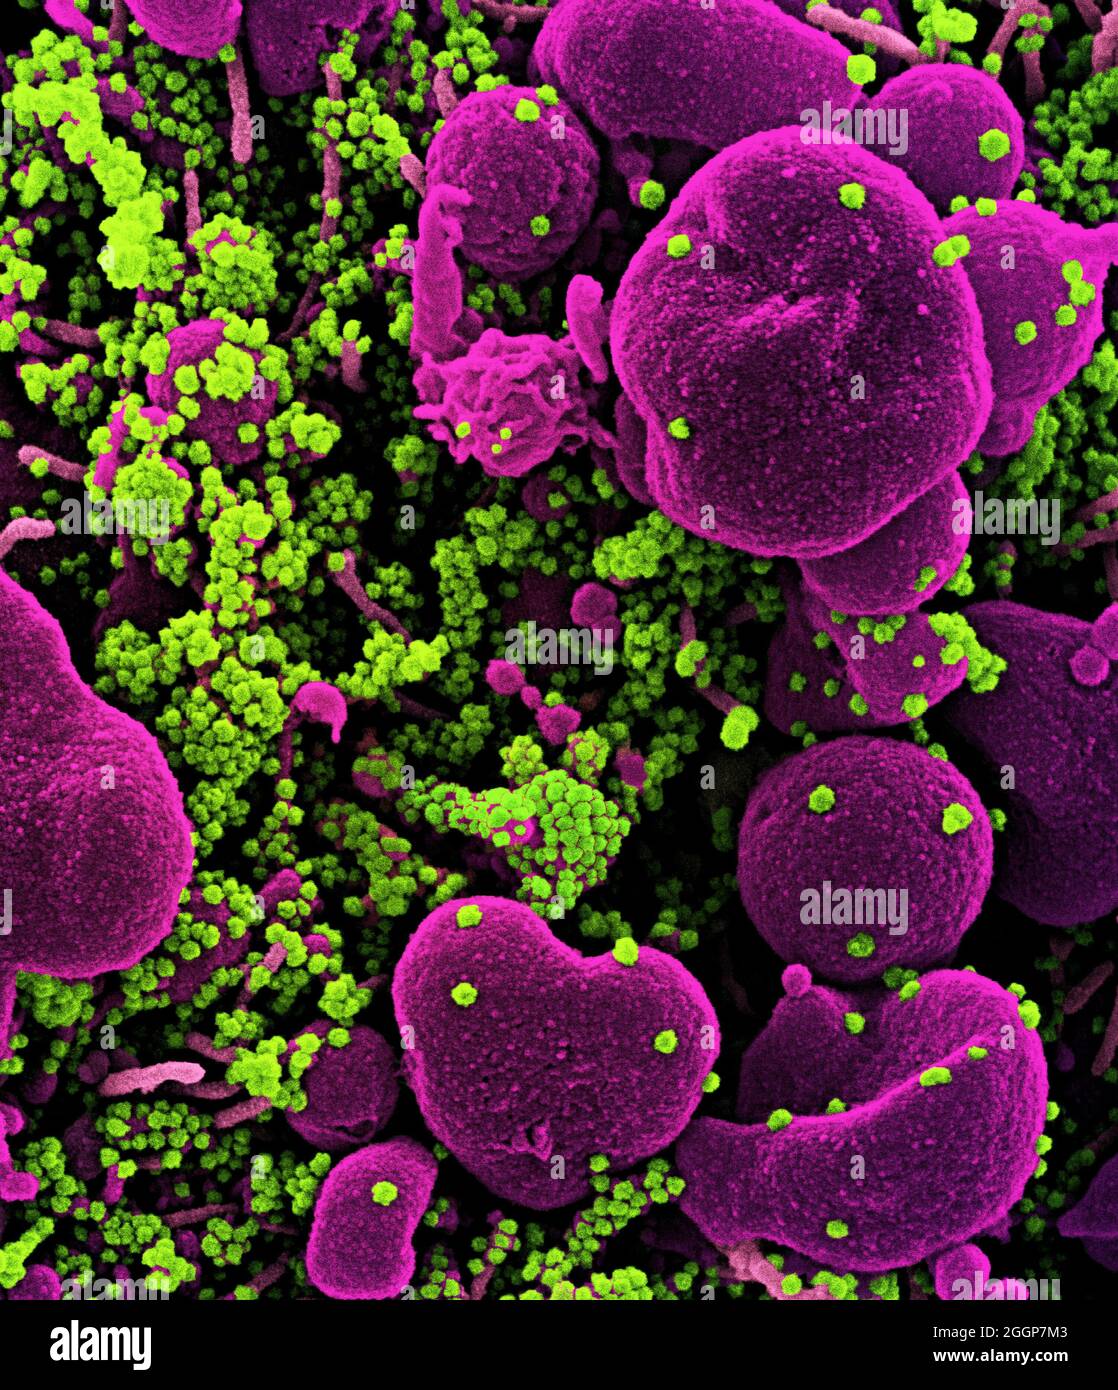 Micrografia elettronica a scansione colorata di una cellula apoptotica (rosa) fortemente infettata con particelle di virus SARS-COV-2 (verde), isolate da un campione di paziente. Foto Stock